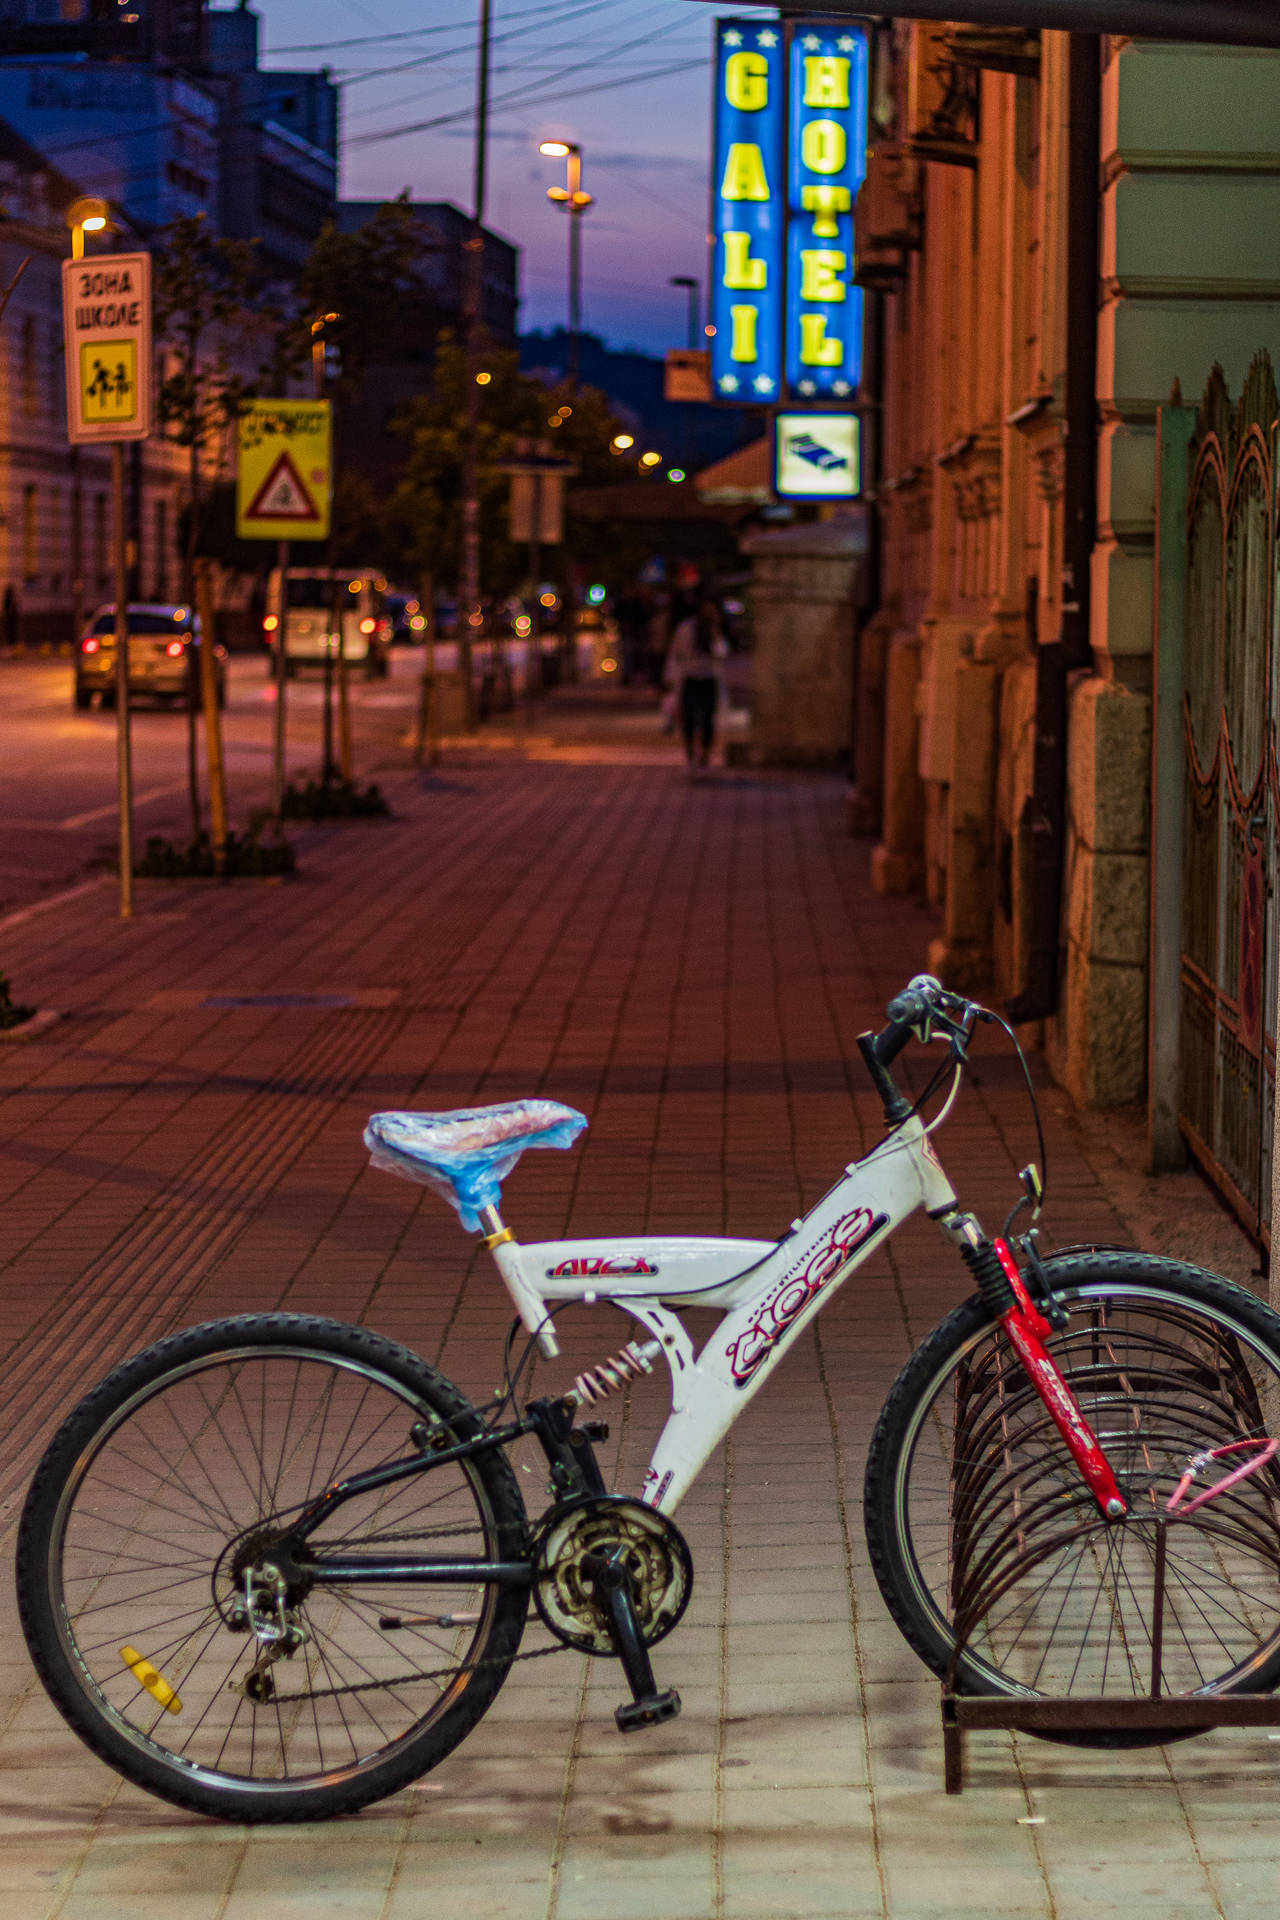 Serbia Night Streets